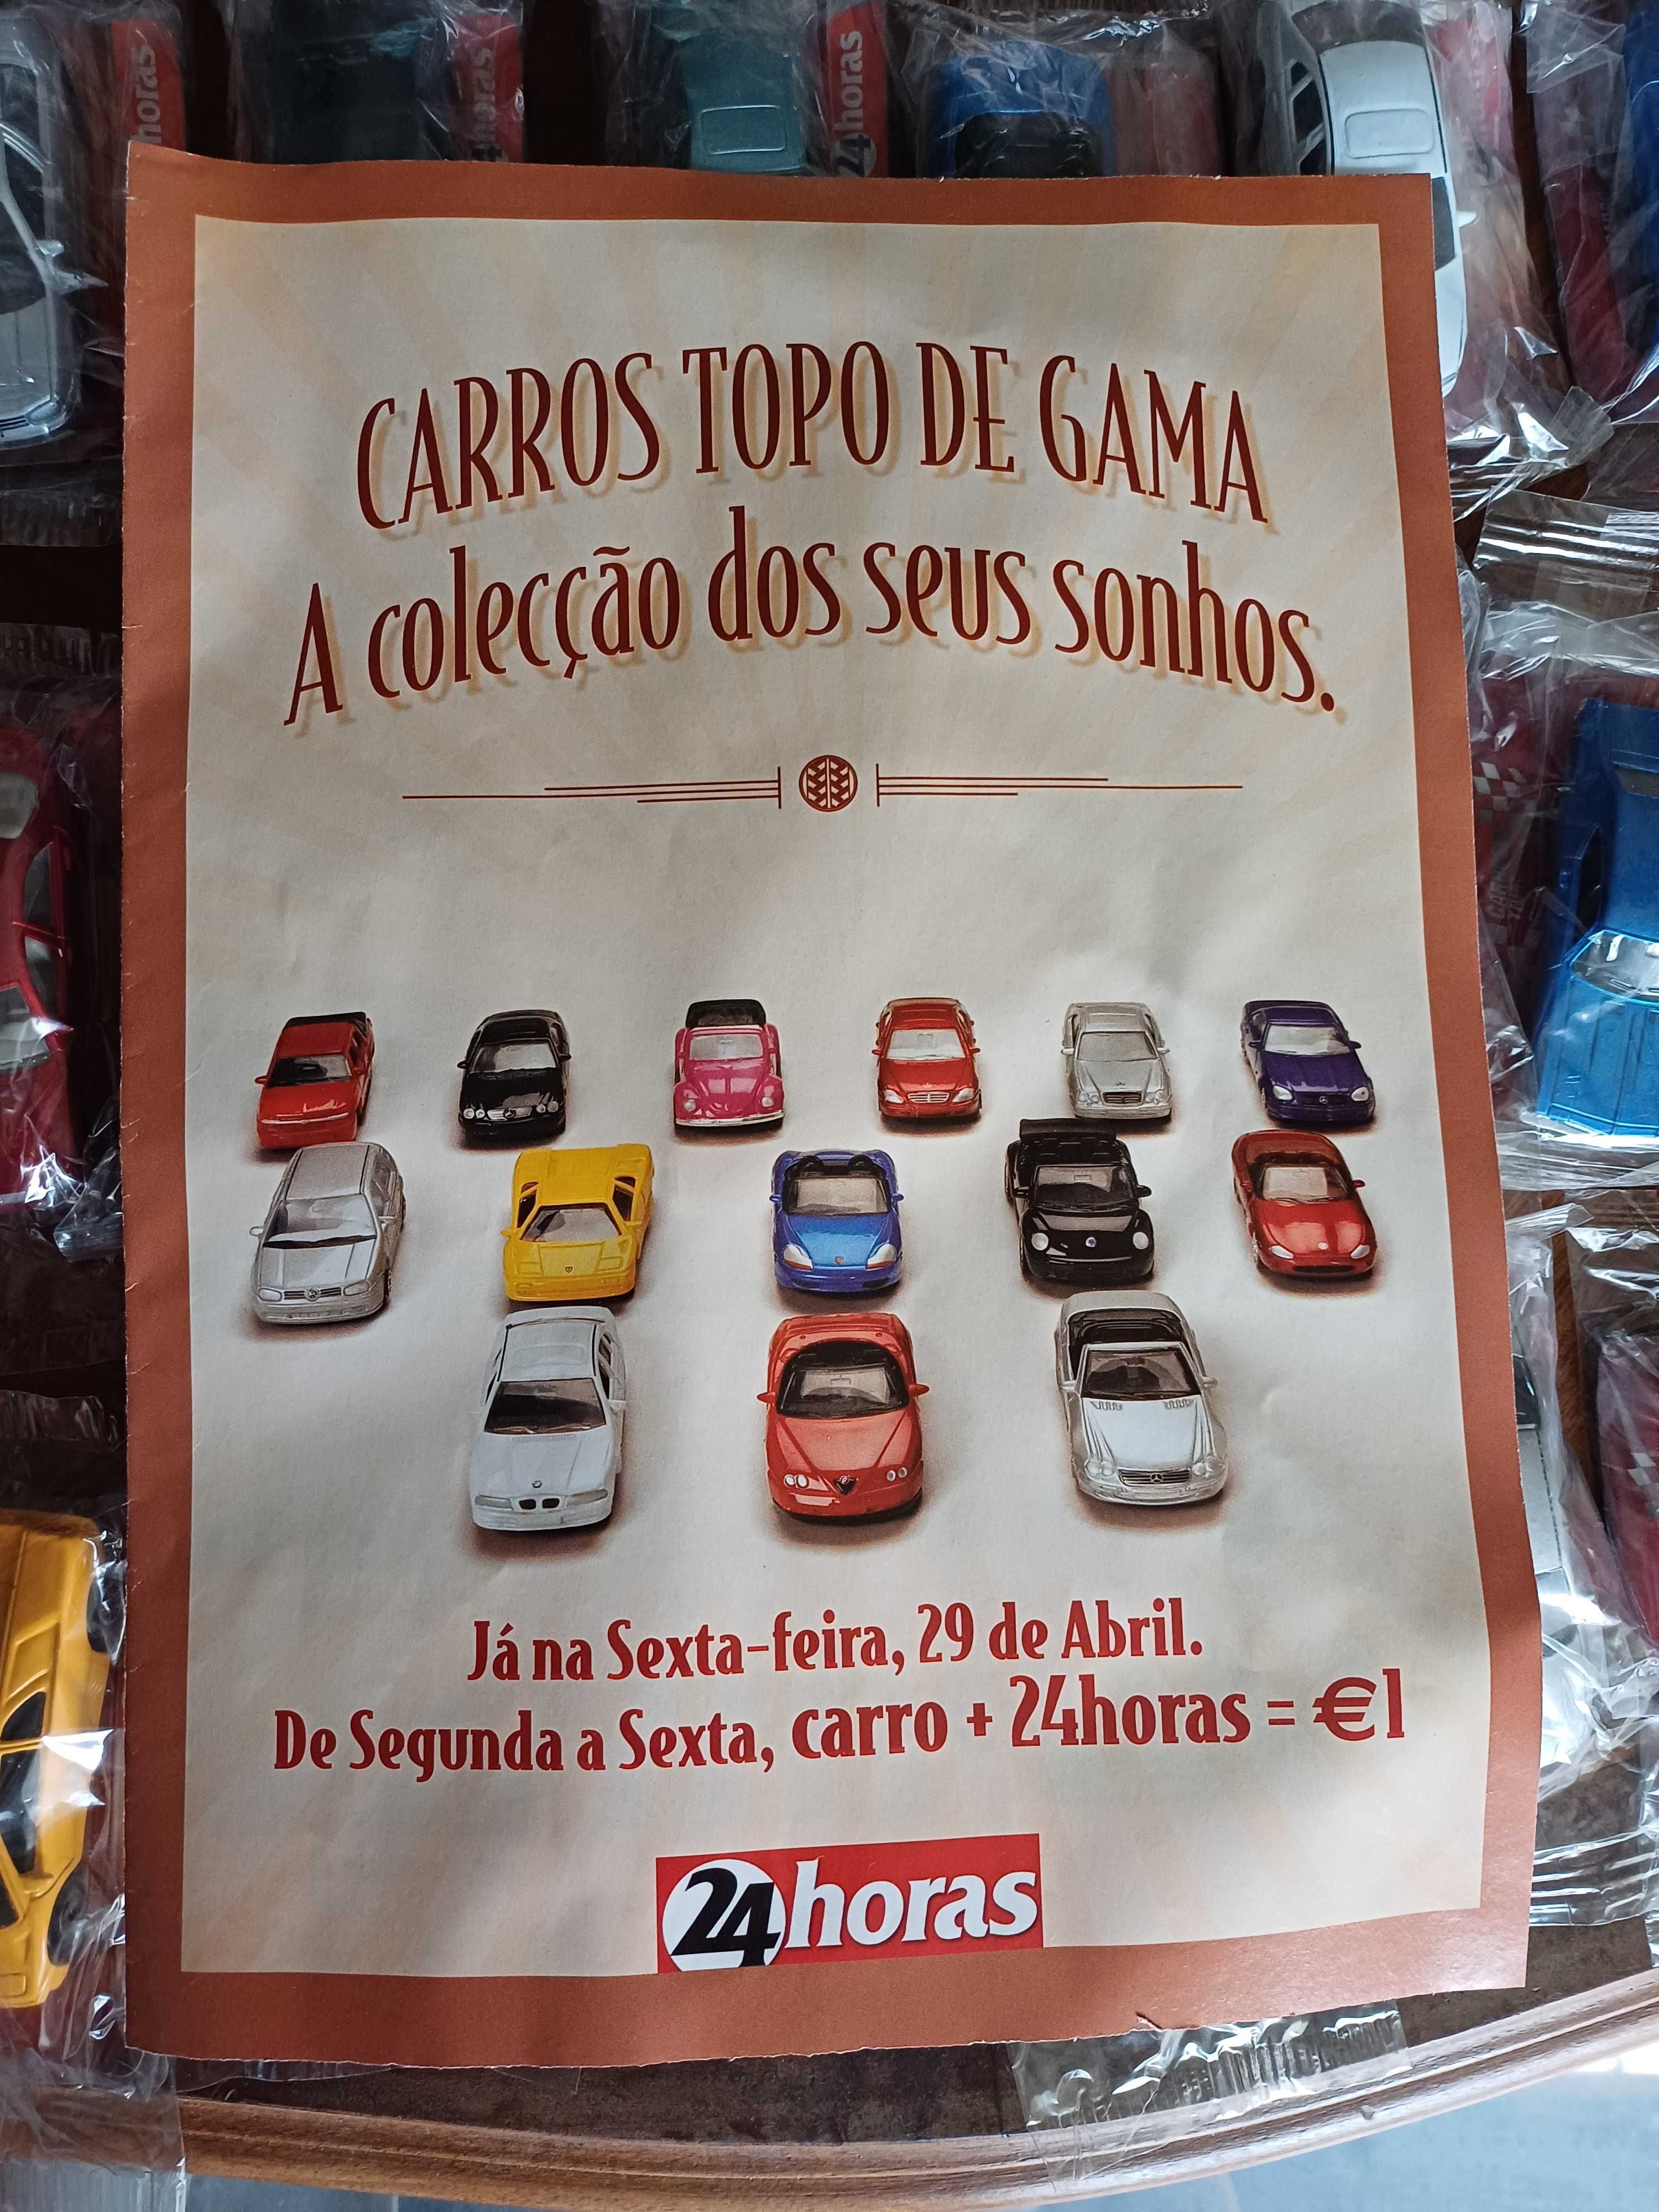 Coleção completa Carros Topo de Gama (30 Carros), Jornal 24 Horas